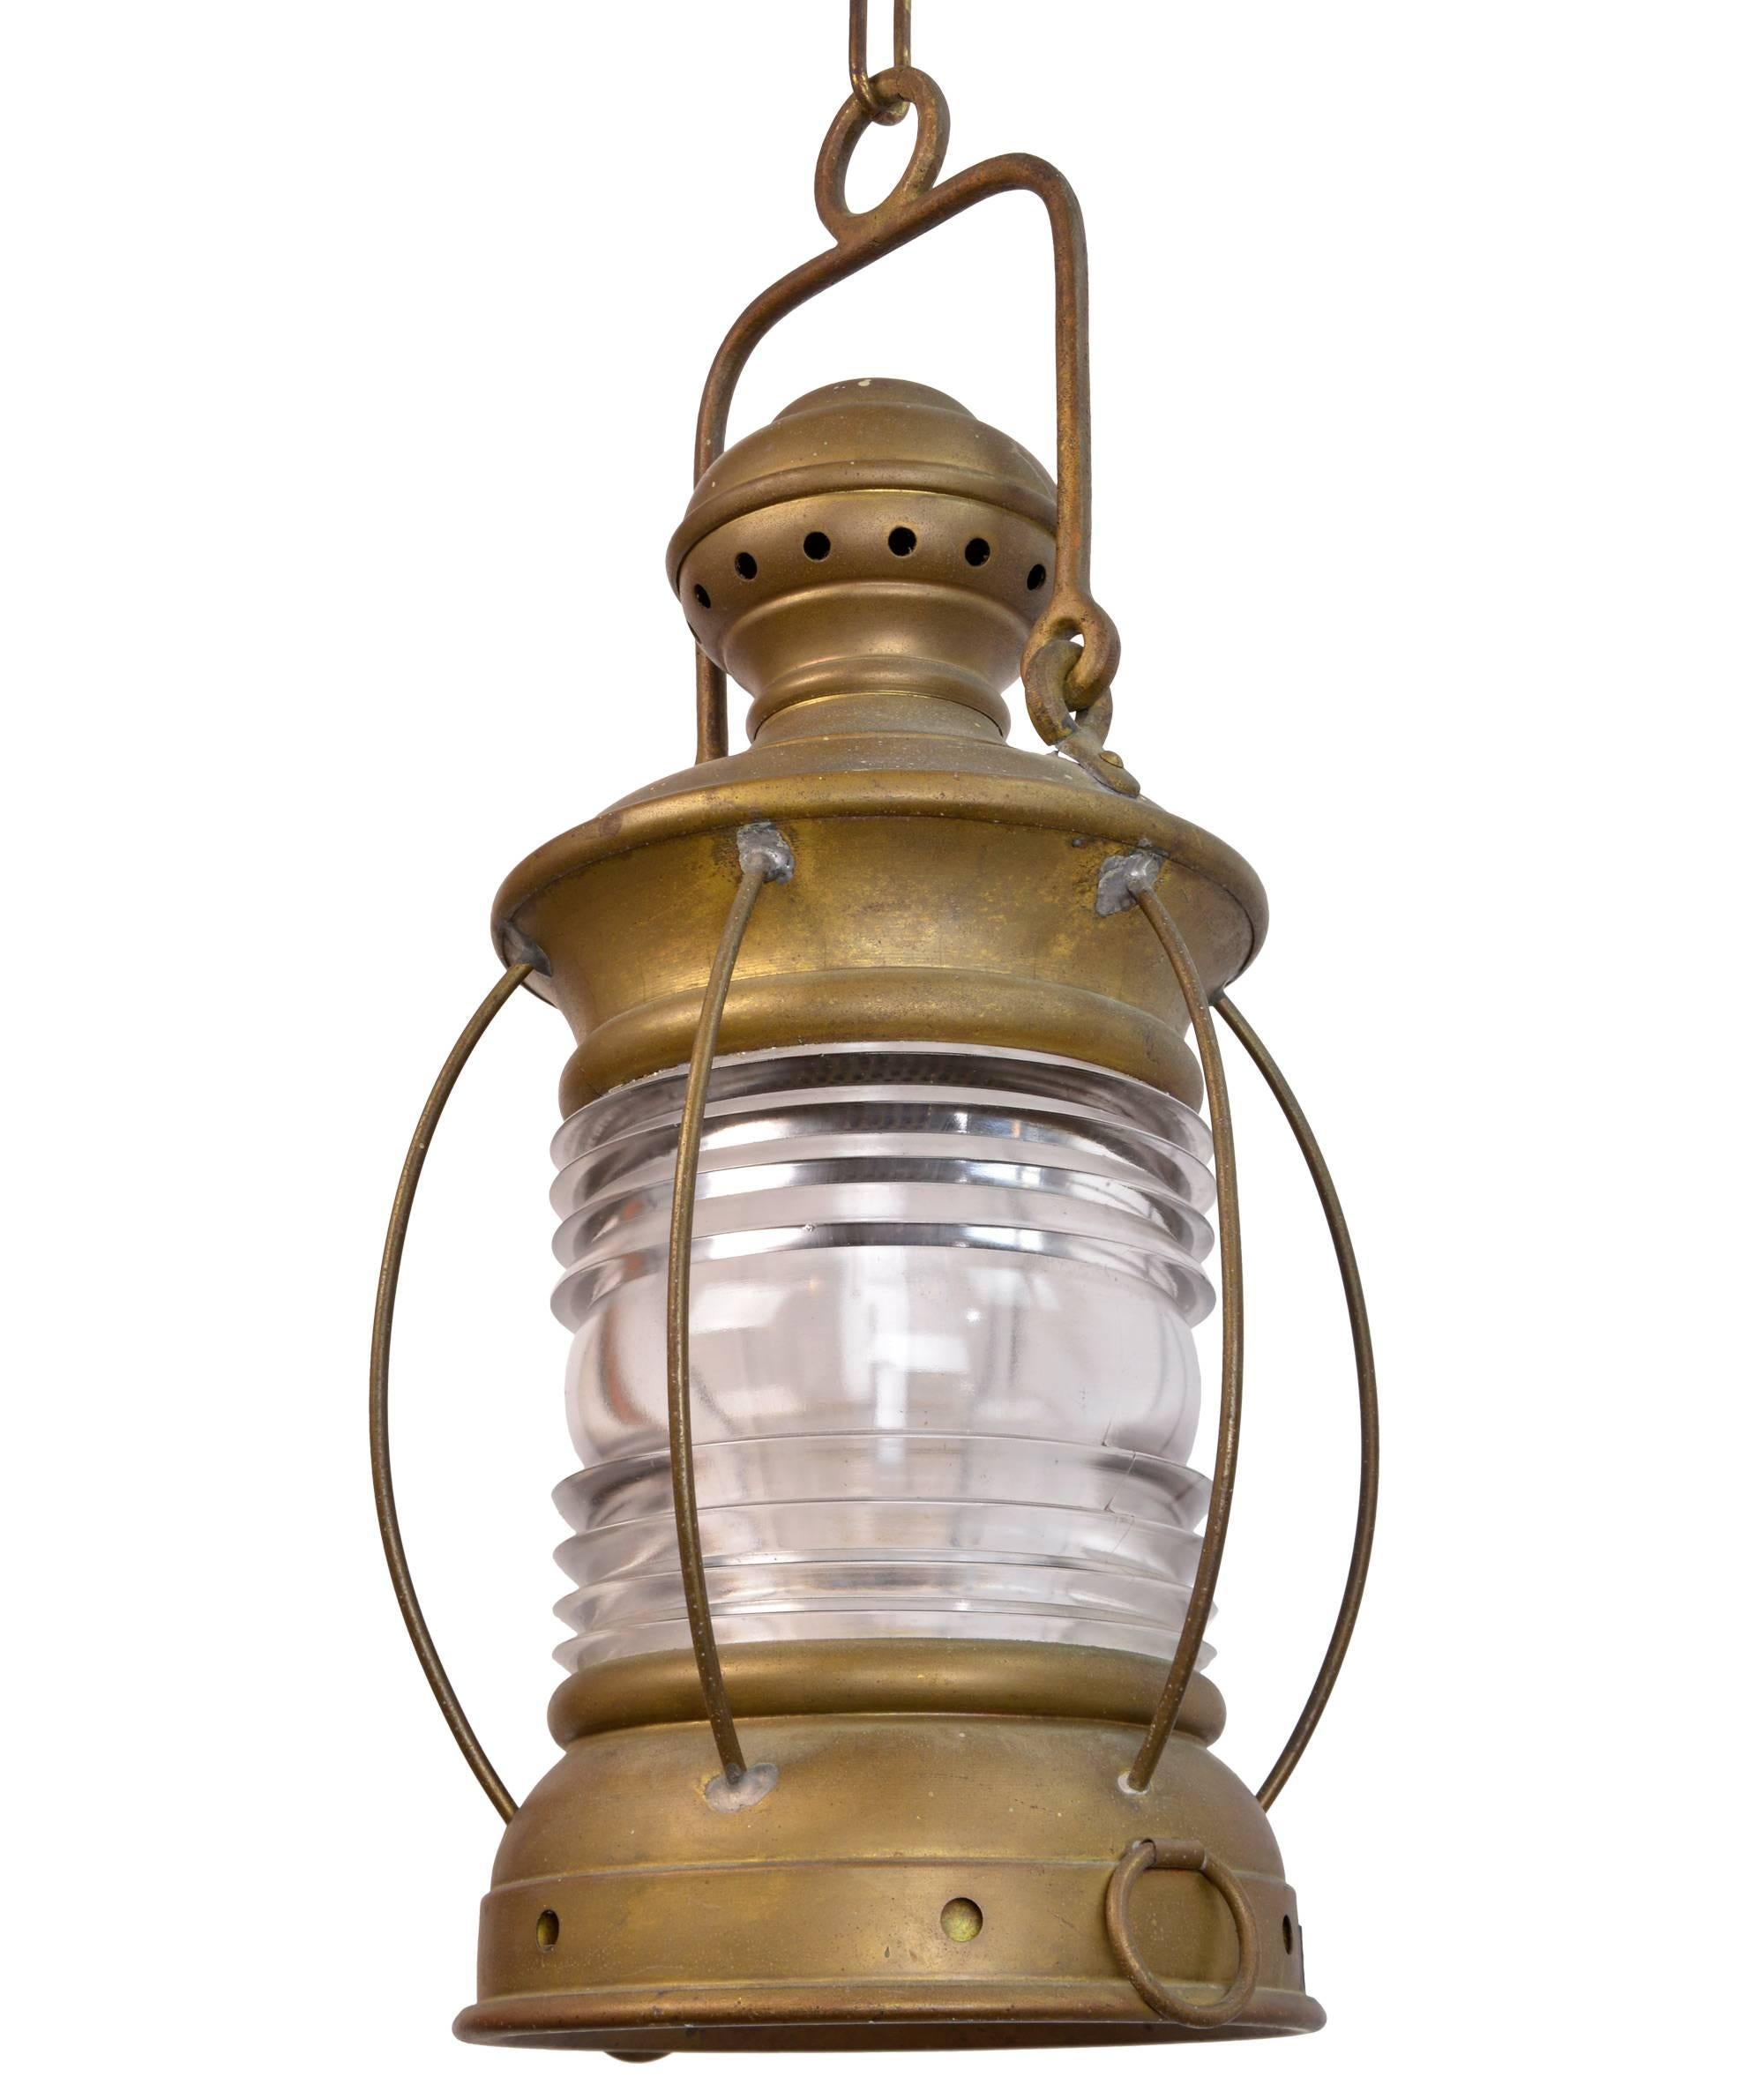 perkins marine lamp antique